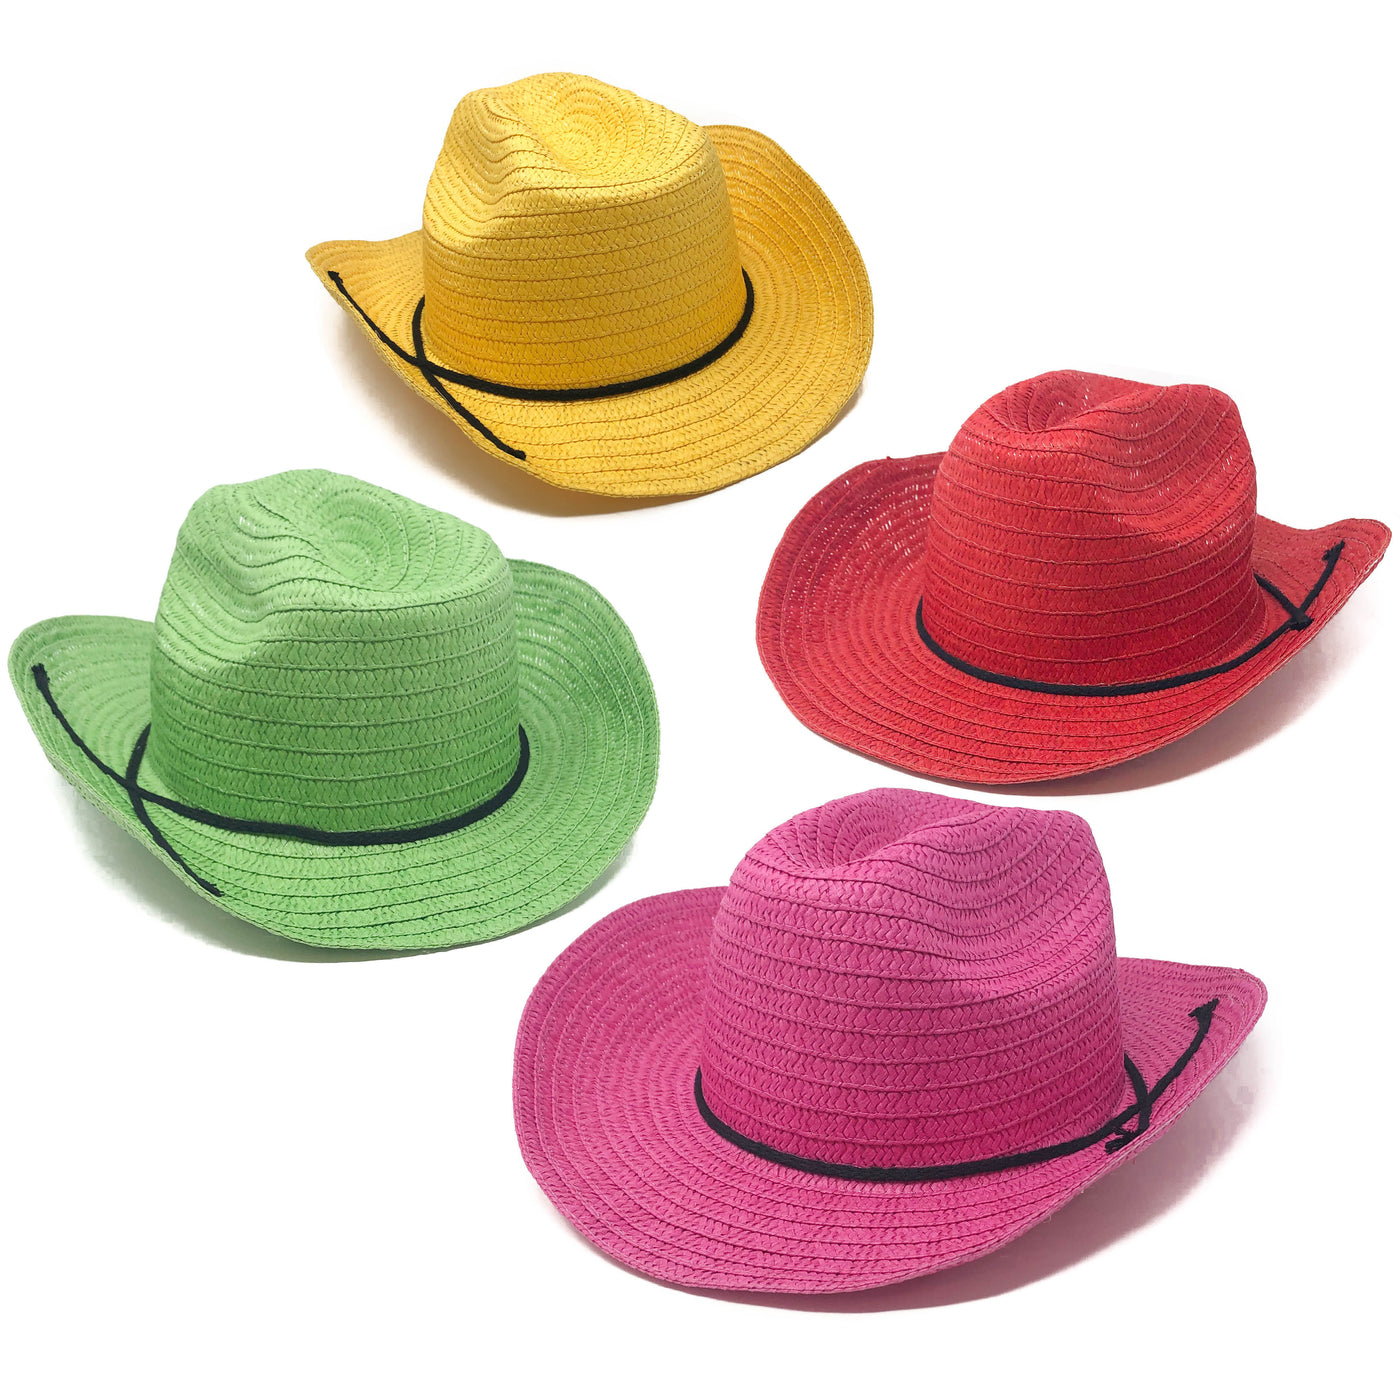 Cowboy Hat Unisex in Different Colors » Kostümpalast.de